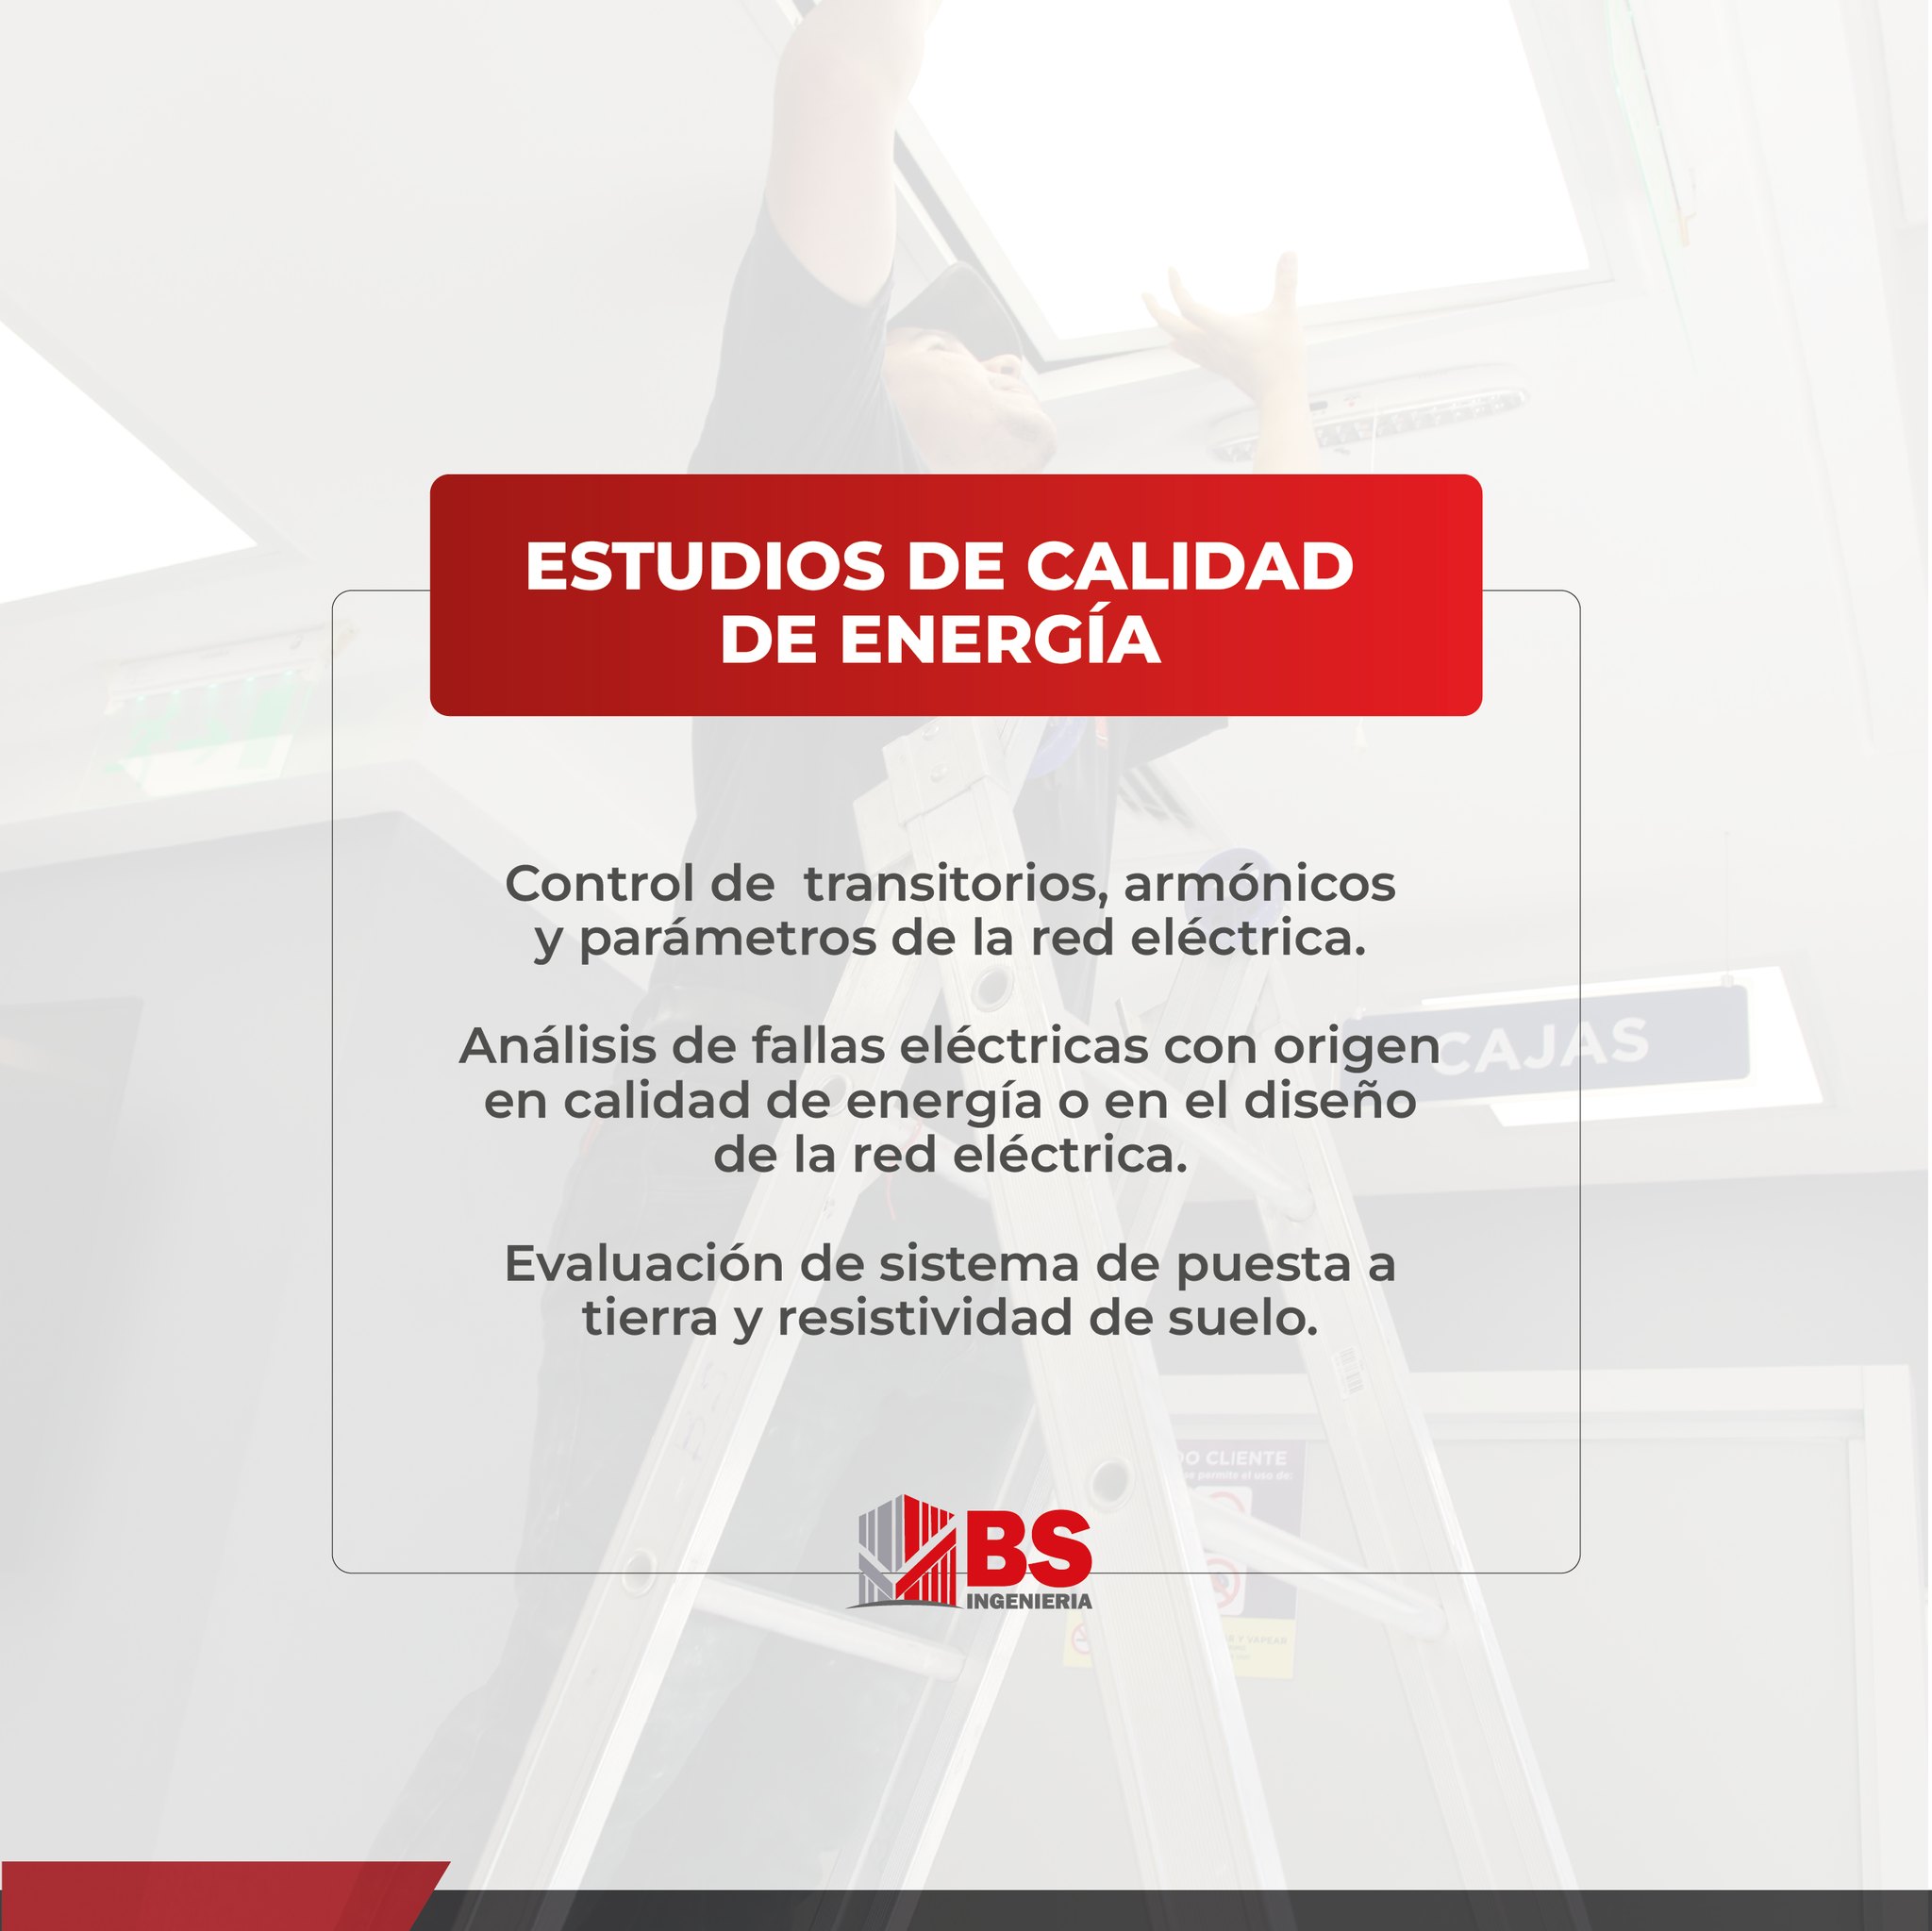 bs-ingenieria en Paraguay